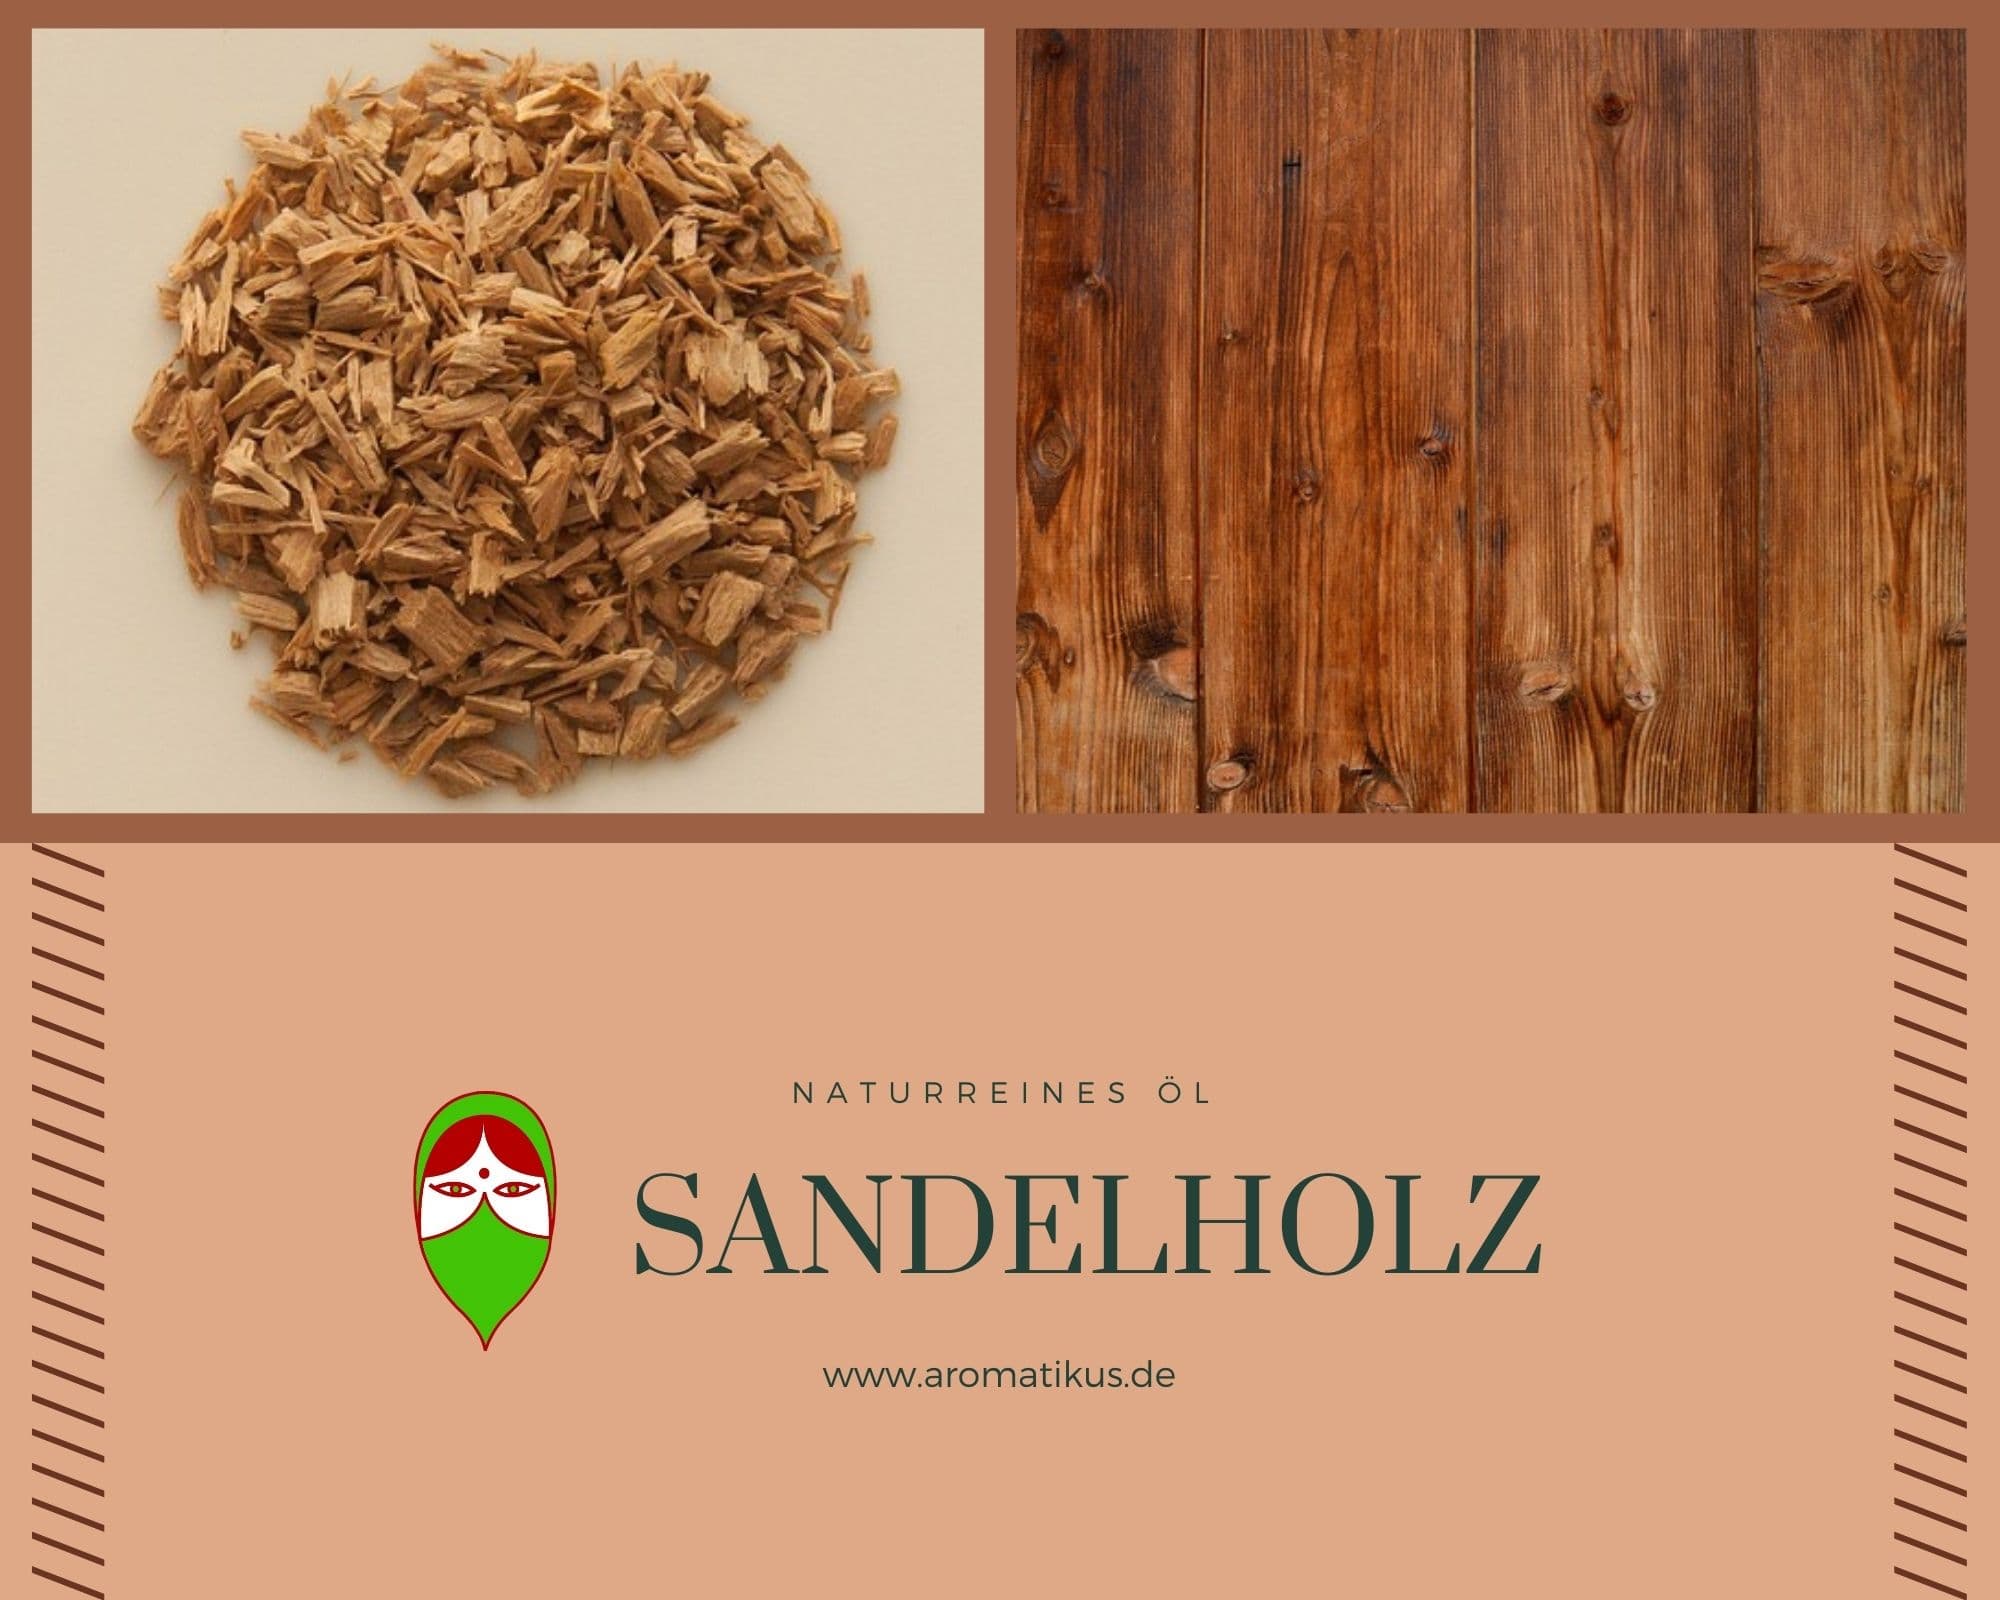 Ätherisches Duftöl Sandelholz als naturreines Öl von Aromatikus